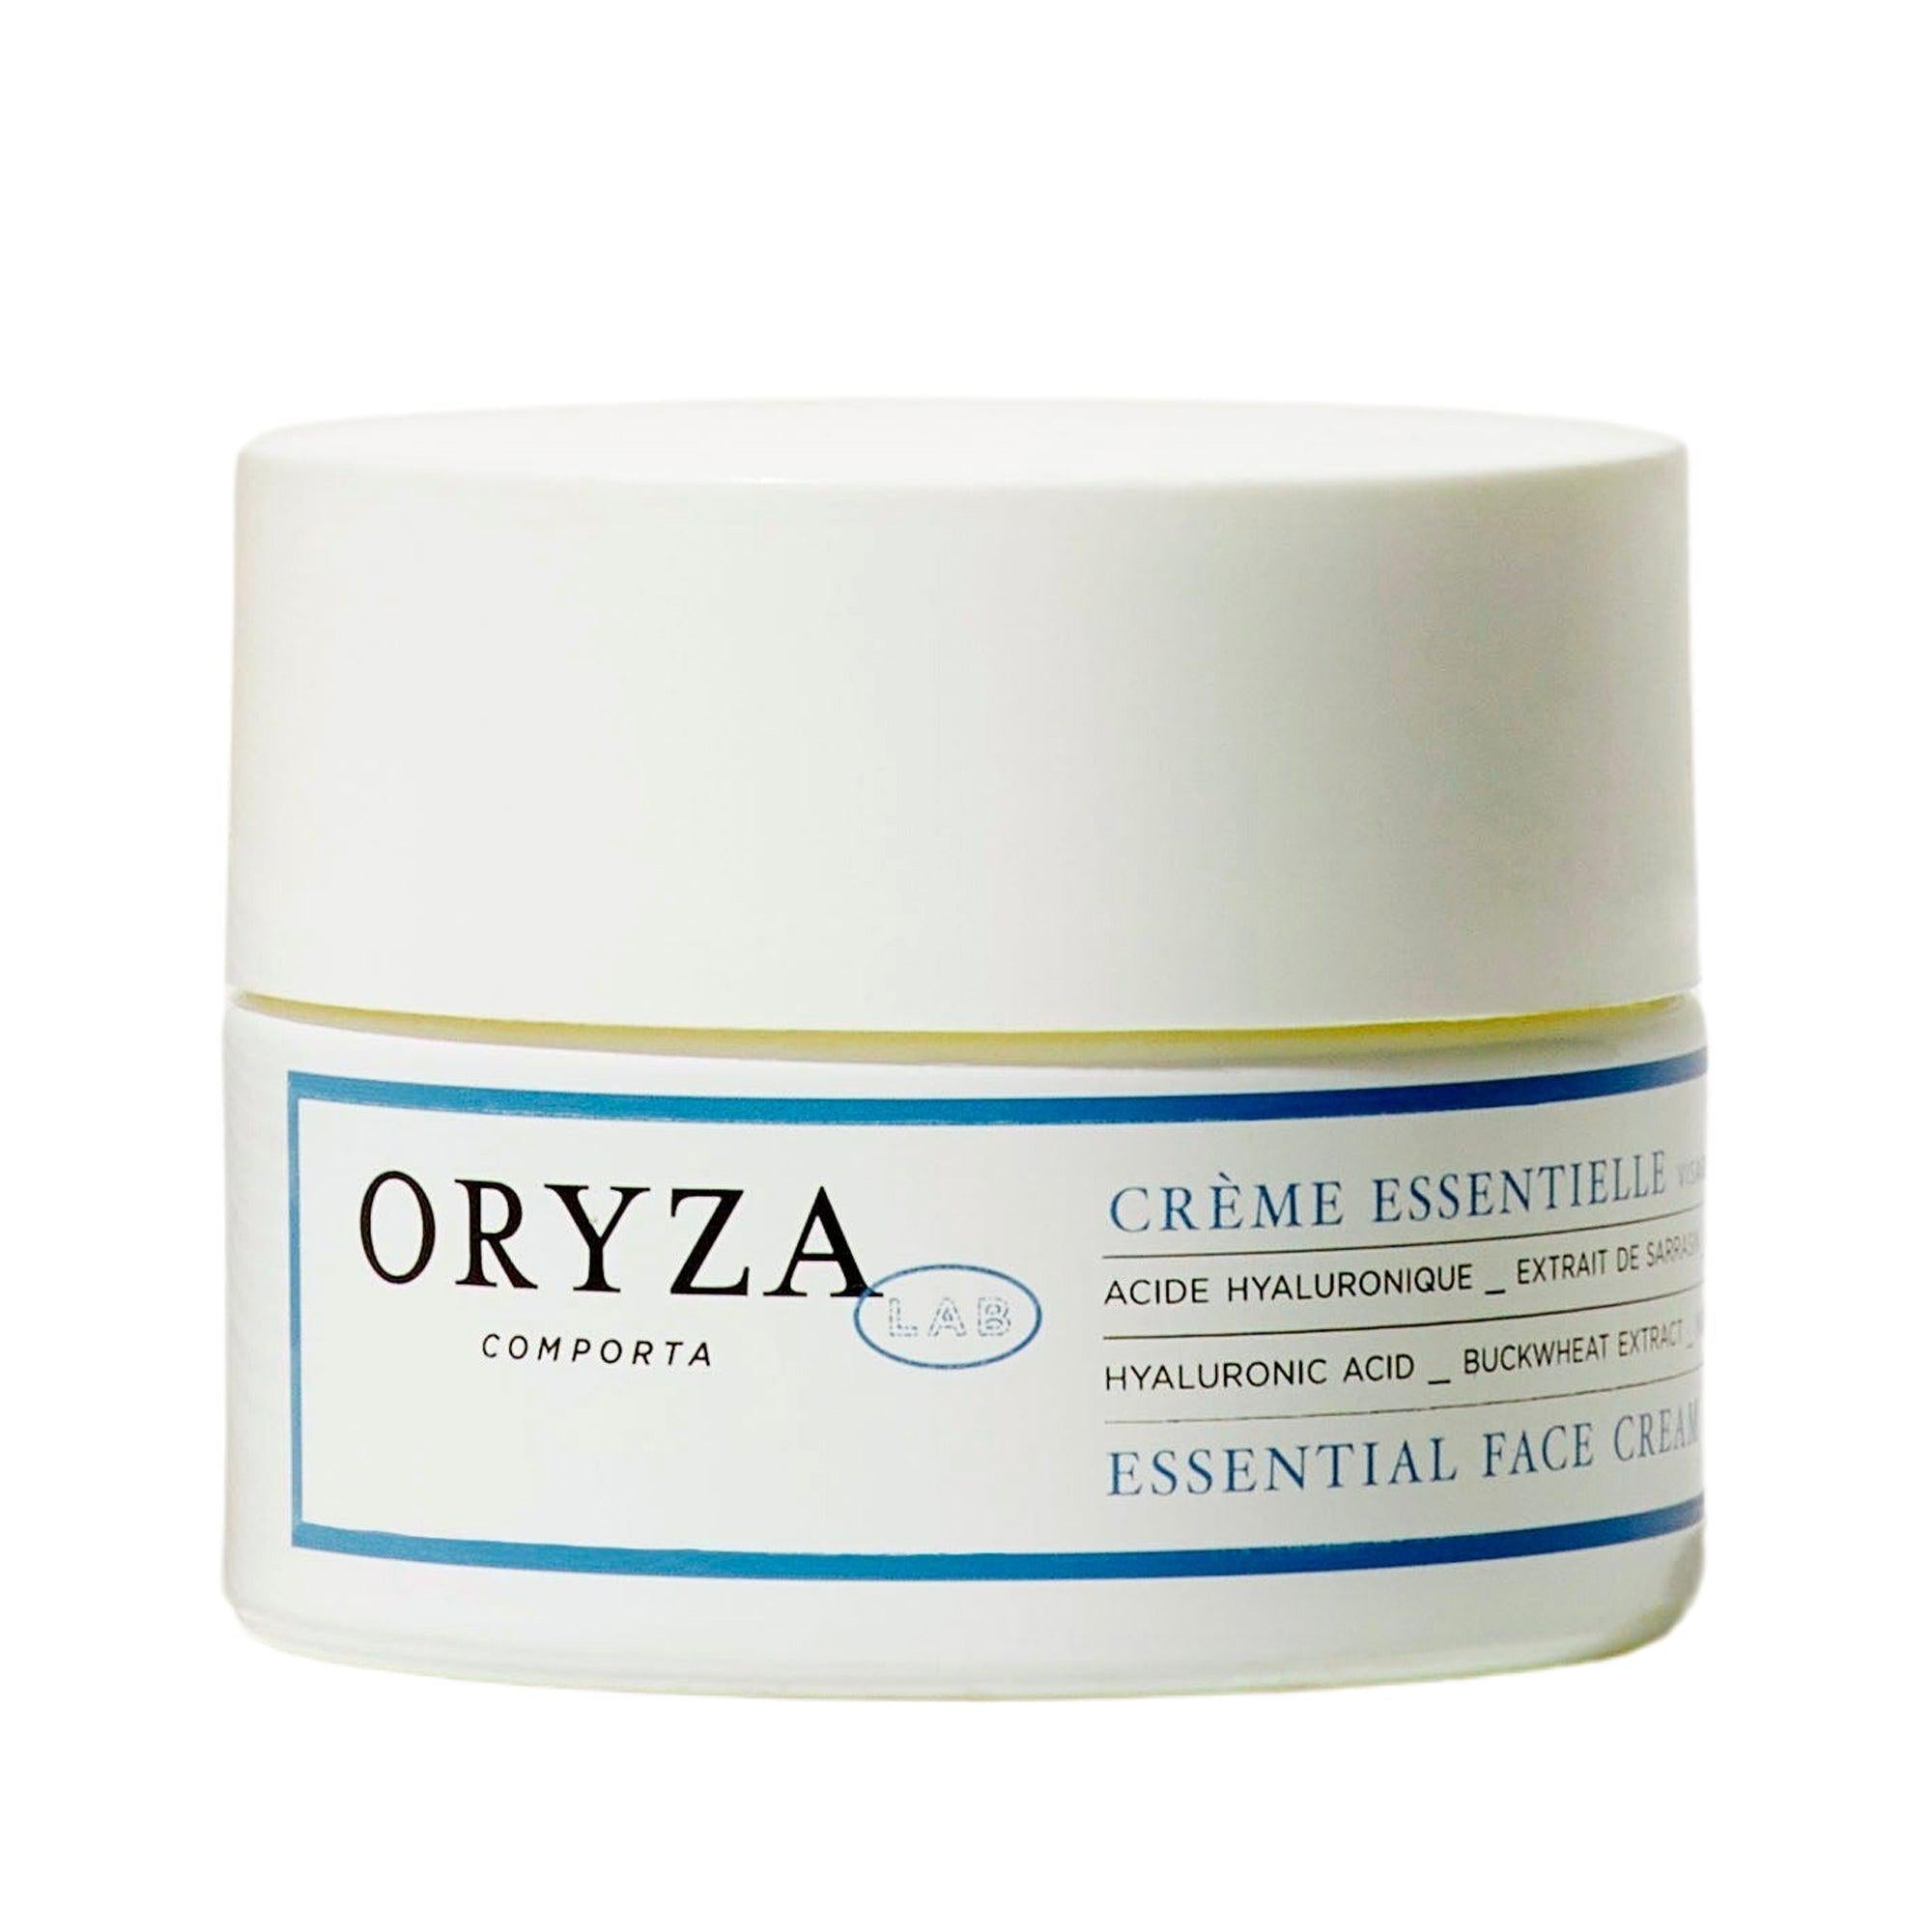 Indisponible - Crème Essentielle Nicht verfügbar – Essential Cream - Oryza Lab